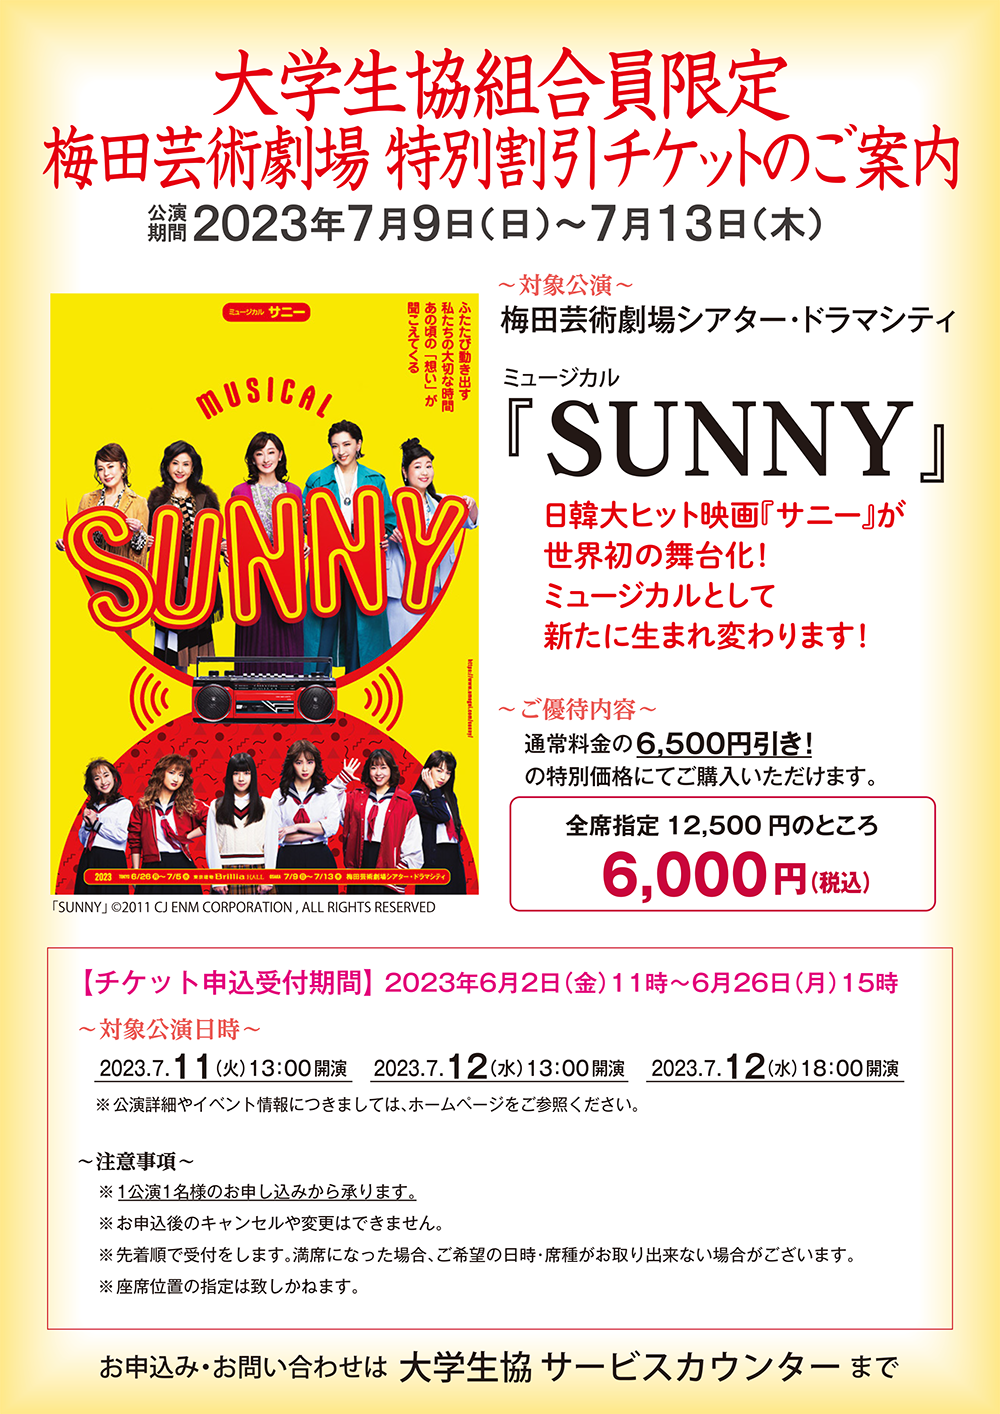 ミュージカル『SUNNY』は2023年6月2日(金)発売です